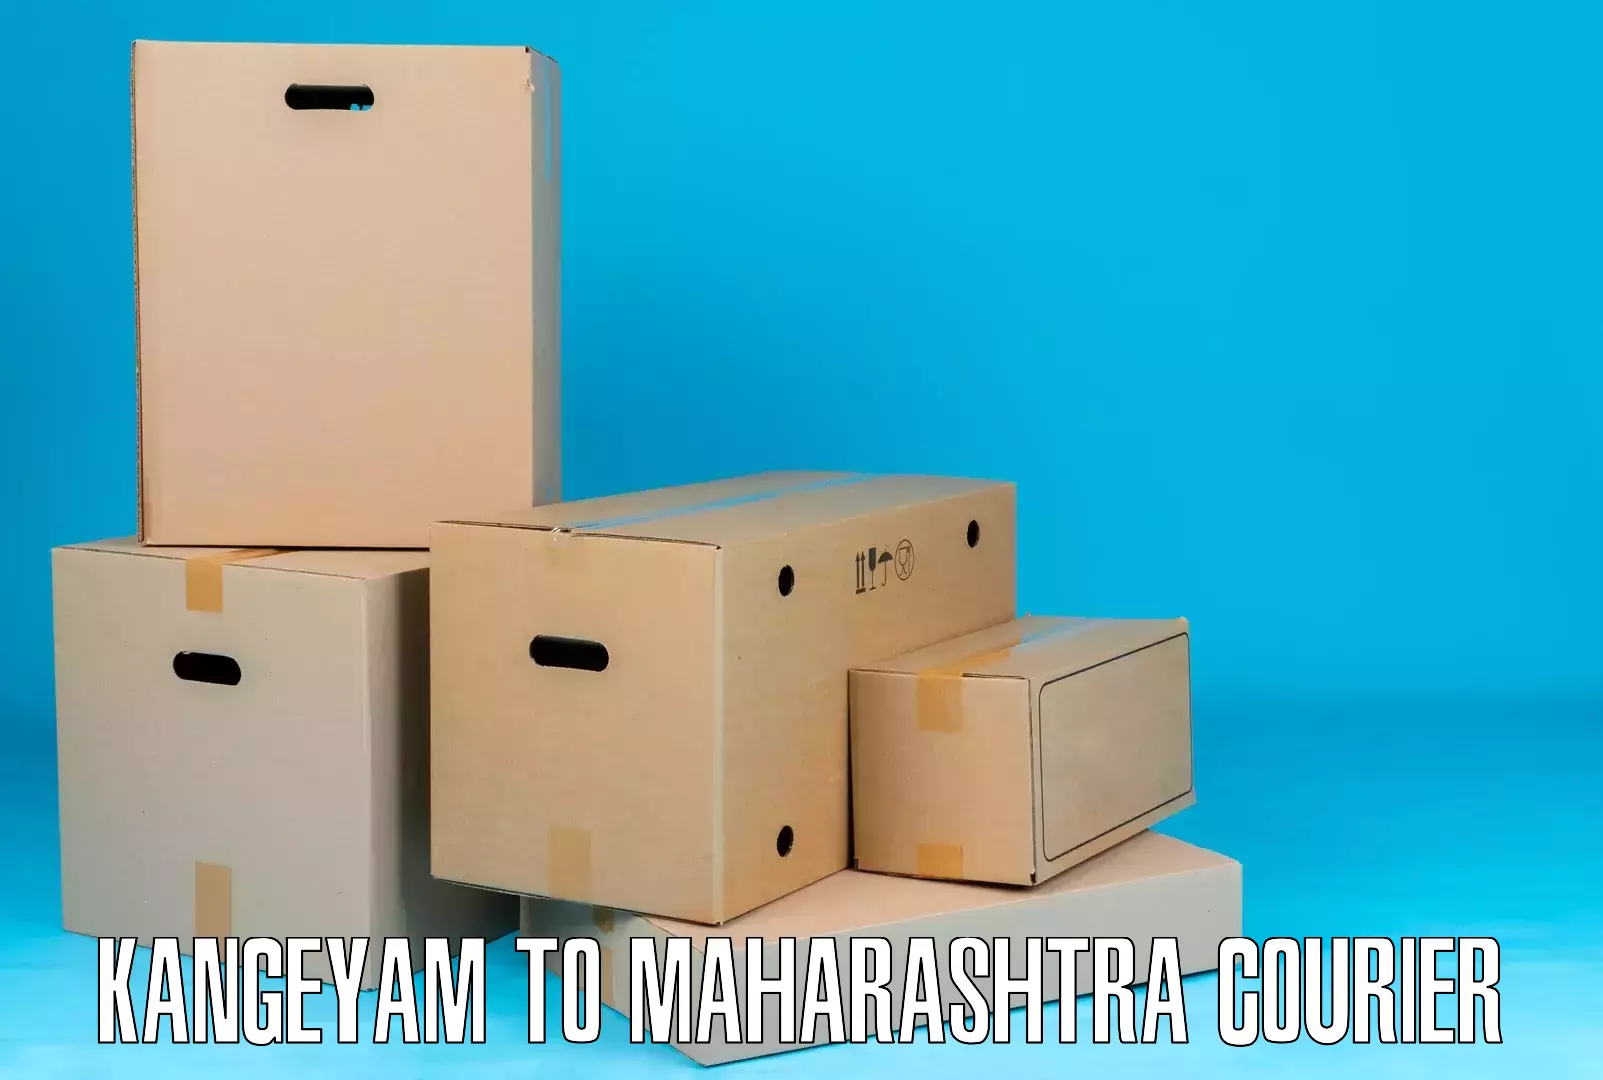 Global freight services Kangeyam to Maharashtra